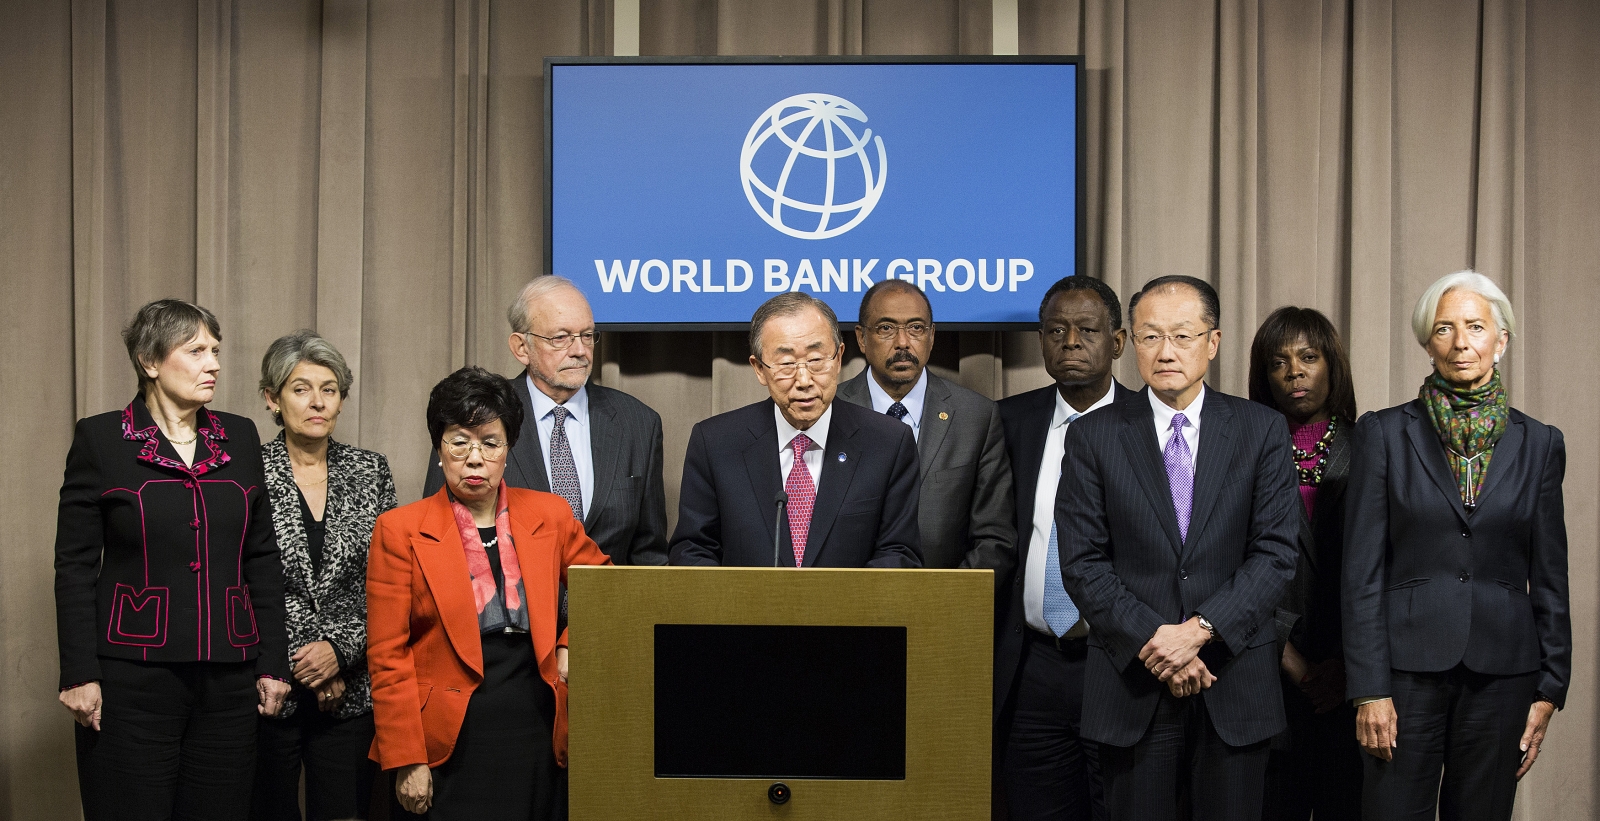 Всемирный банк международная организация. Всемирный банк ООН. Всемирный банк международные организации. Группа Всемирного банка. Всемирный банк картинки.